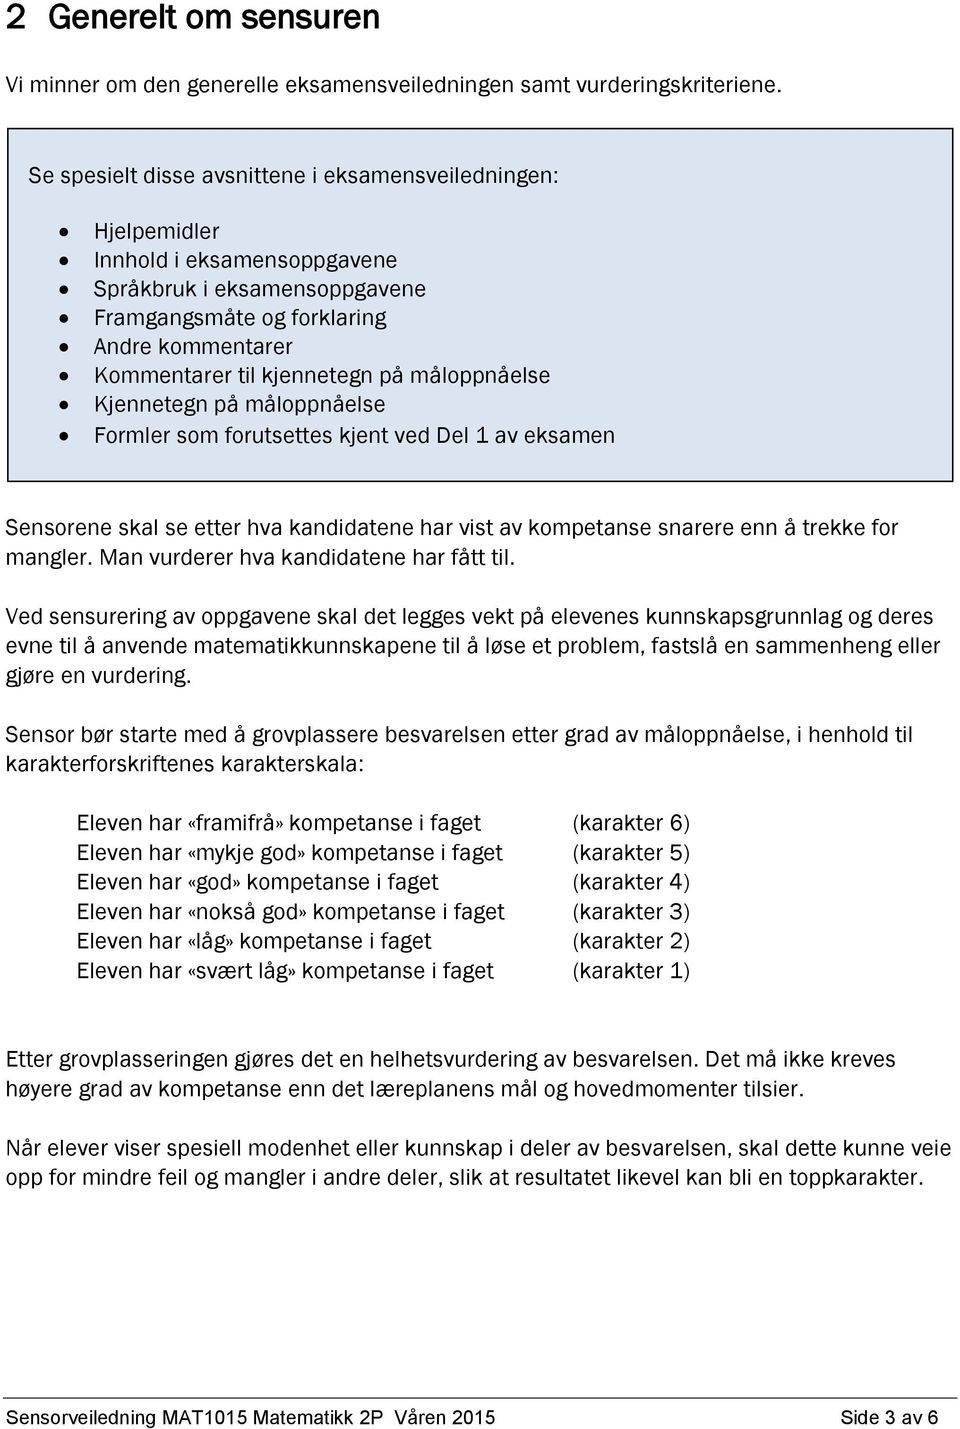 Sensorveiledning MAT1015 Matematikk 2P - PDF Free Download